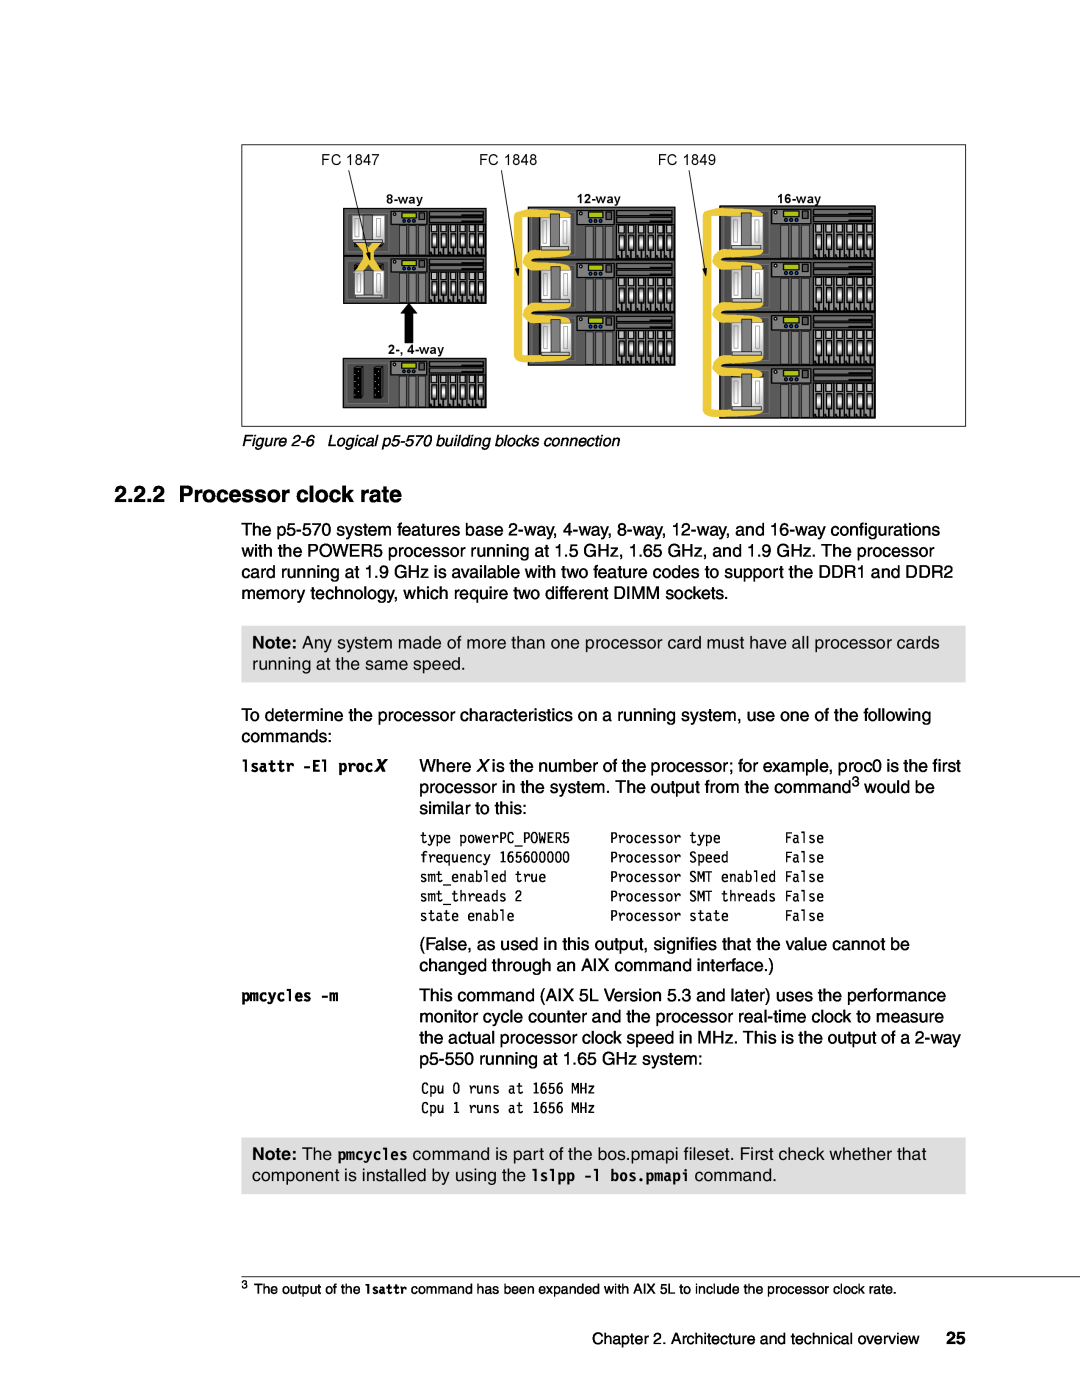 IBM P5 570 manual Processor clock rate, pmcycles -m 